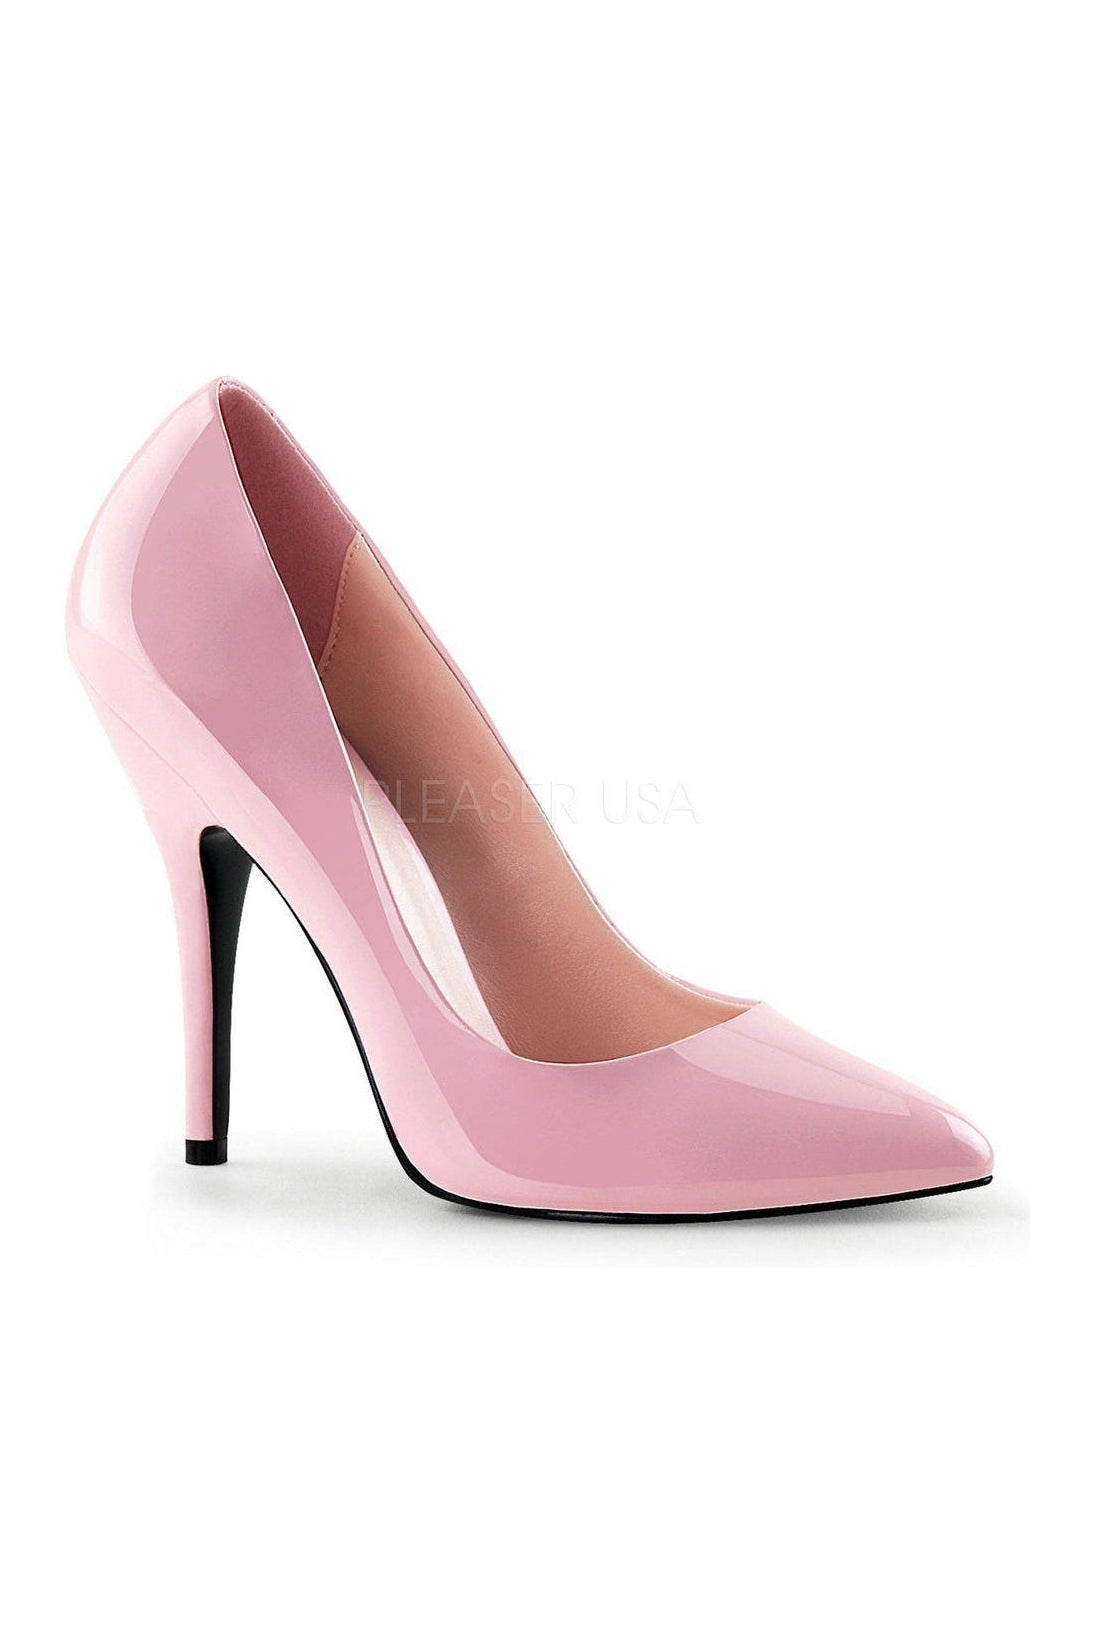 drag queen heels size 11